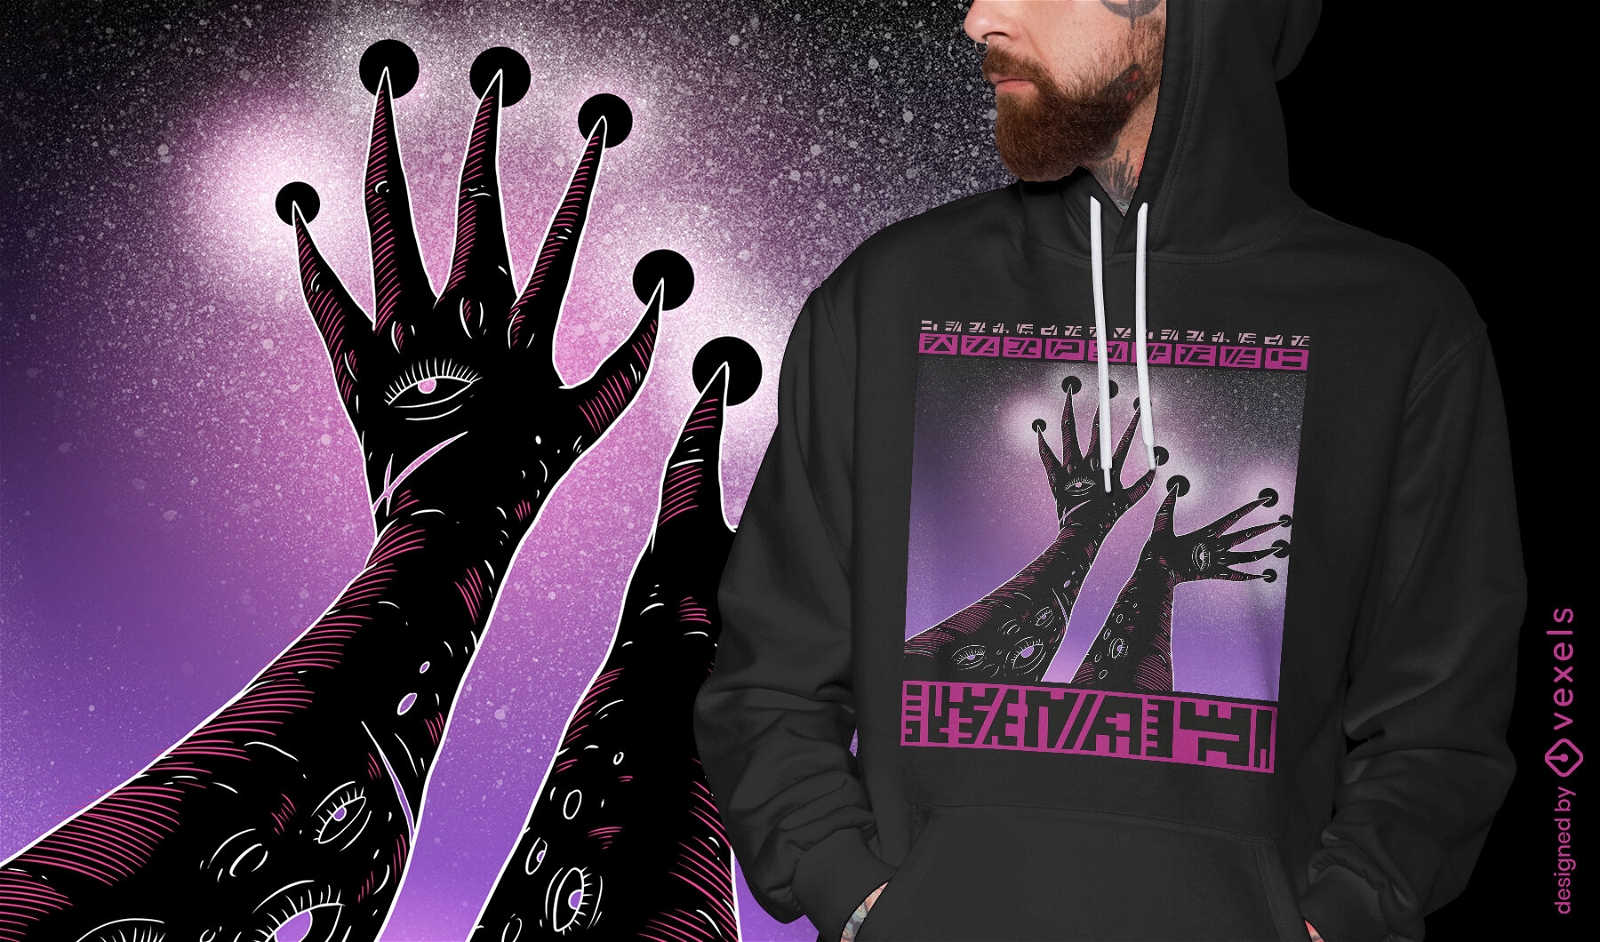 Cosmic alien hand in space t-shirt design